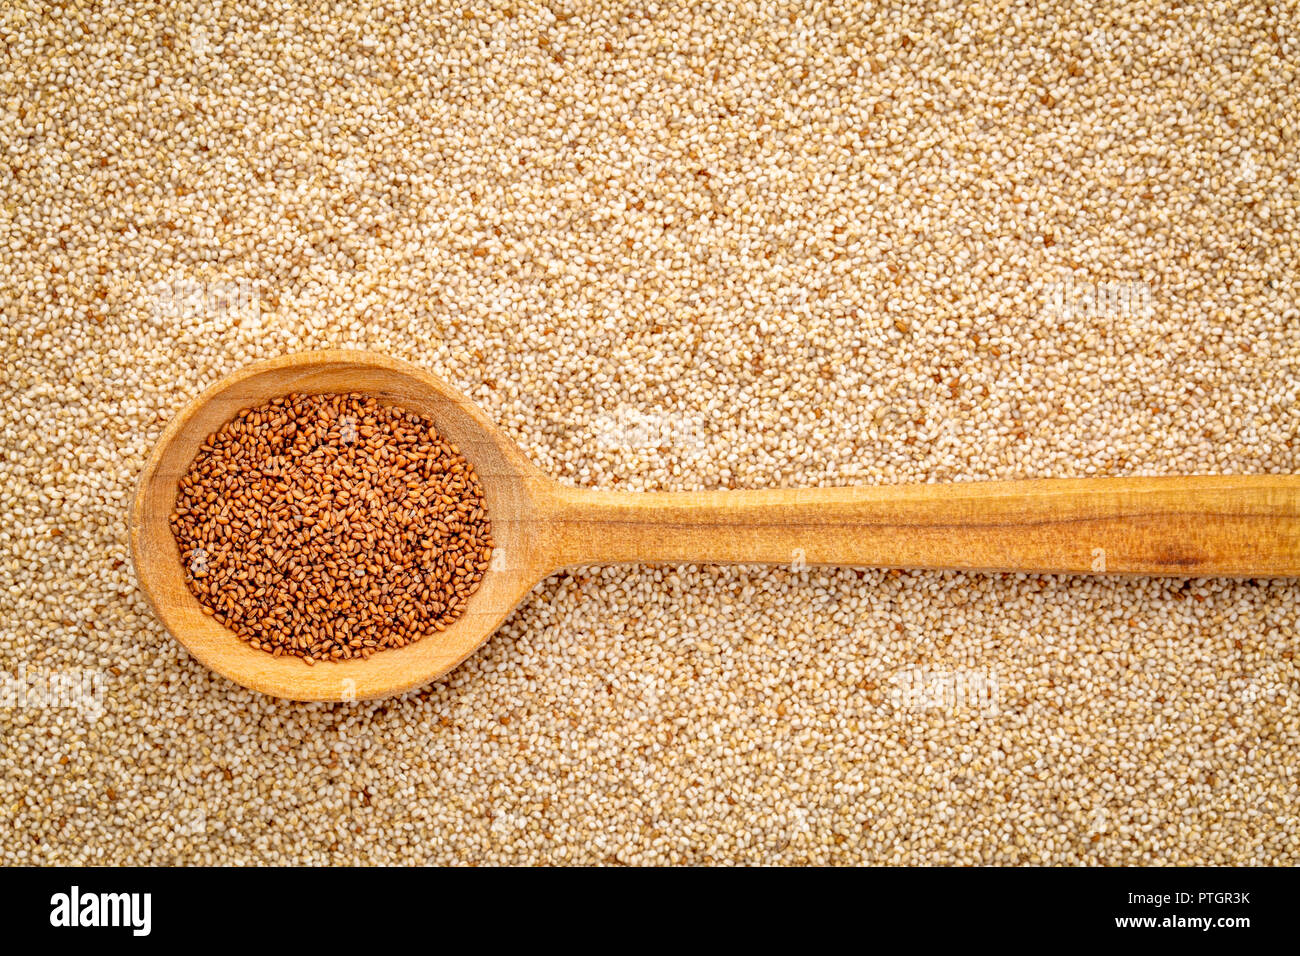 Glutenfreie braun teff Korn auf einem Kochlöffel gegen den Hintergrund von Elfenbein Teff - wichtige Nahrungsmittel Getreide in Äthiopien und Eritrea Stockfoto